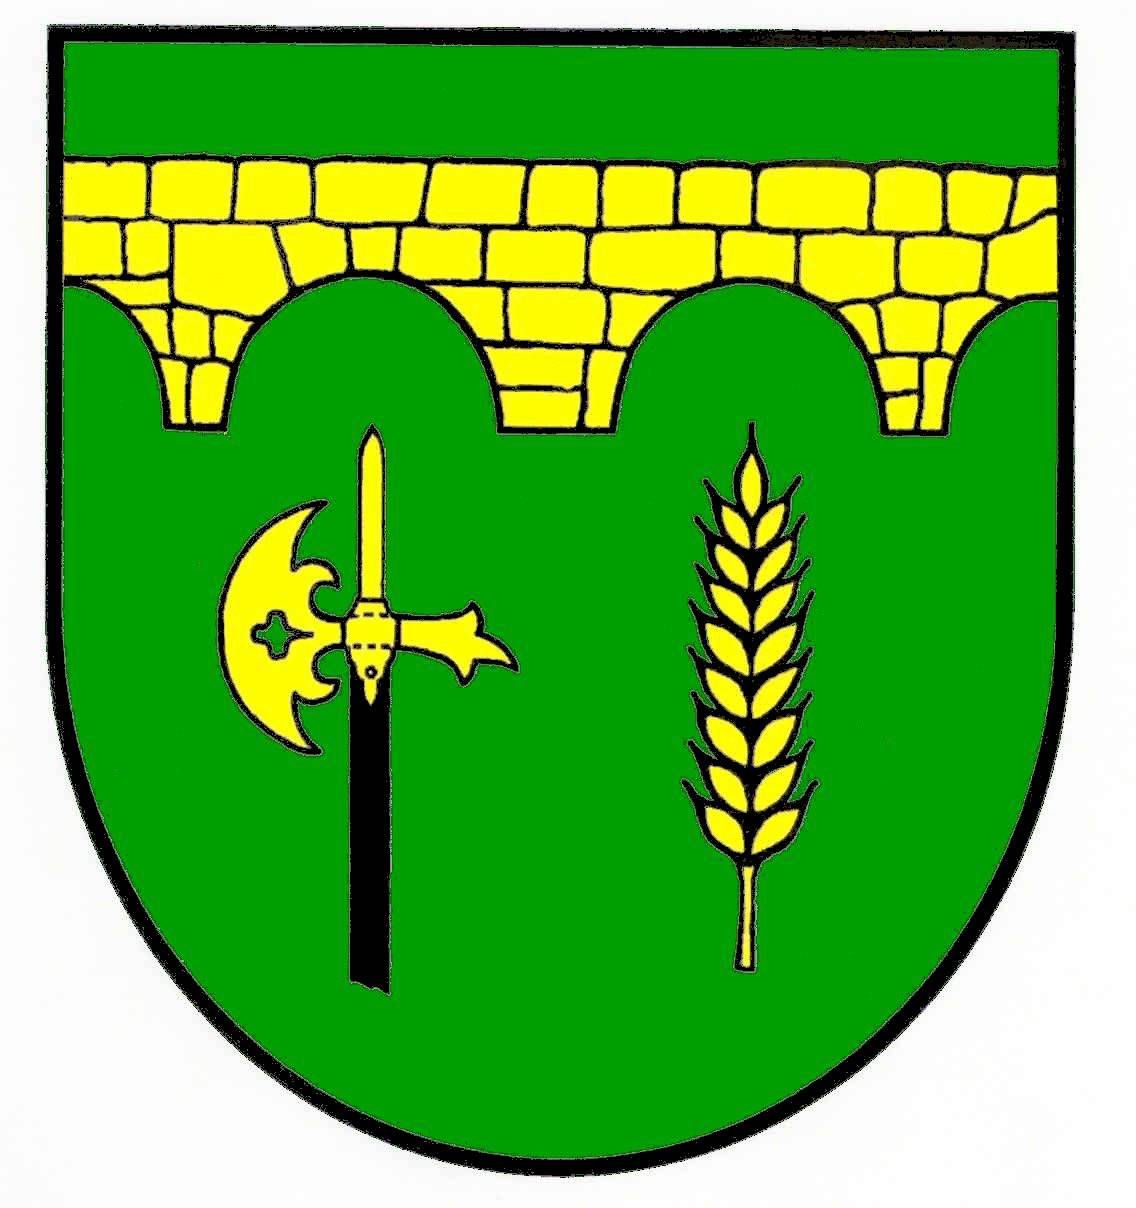 Wappen Gemeinde Beschendorf, Kreis Ostholstein